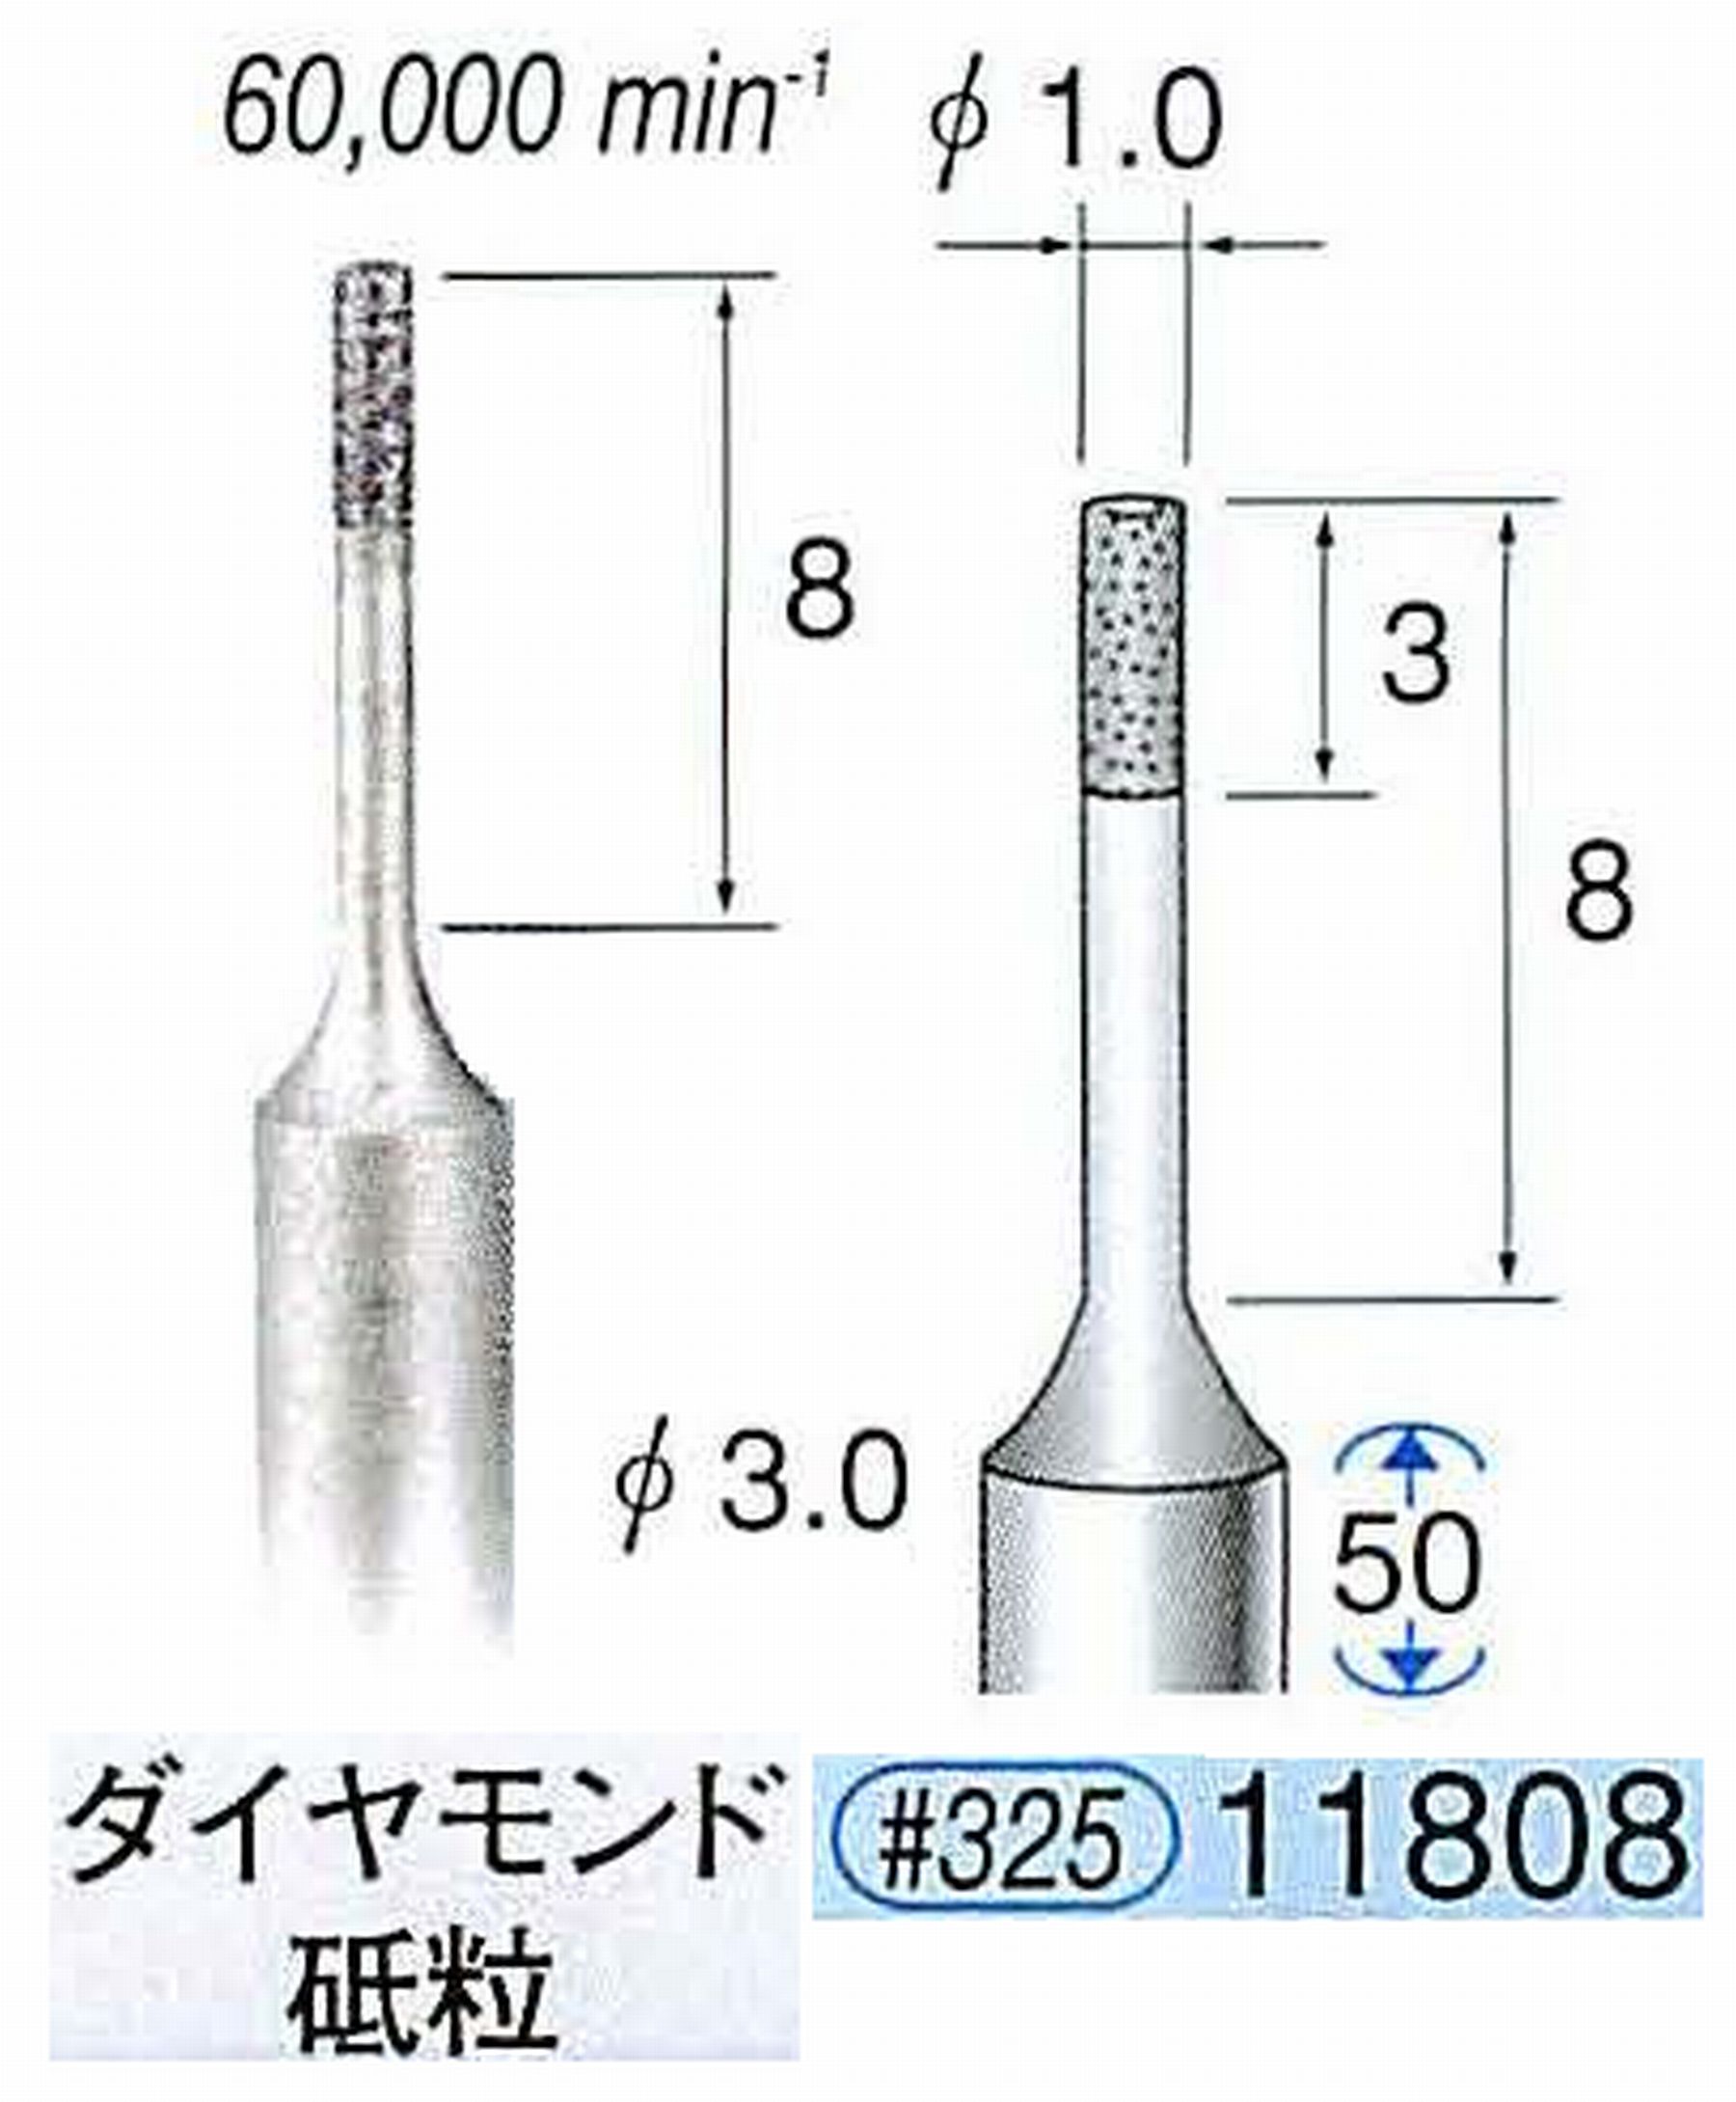 ナカニシ/NAKANISHI SP電着ダイヤモンド ダイヤモンド砥粒 軸径(シャンク)φ3.0mm 11808